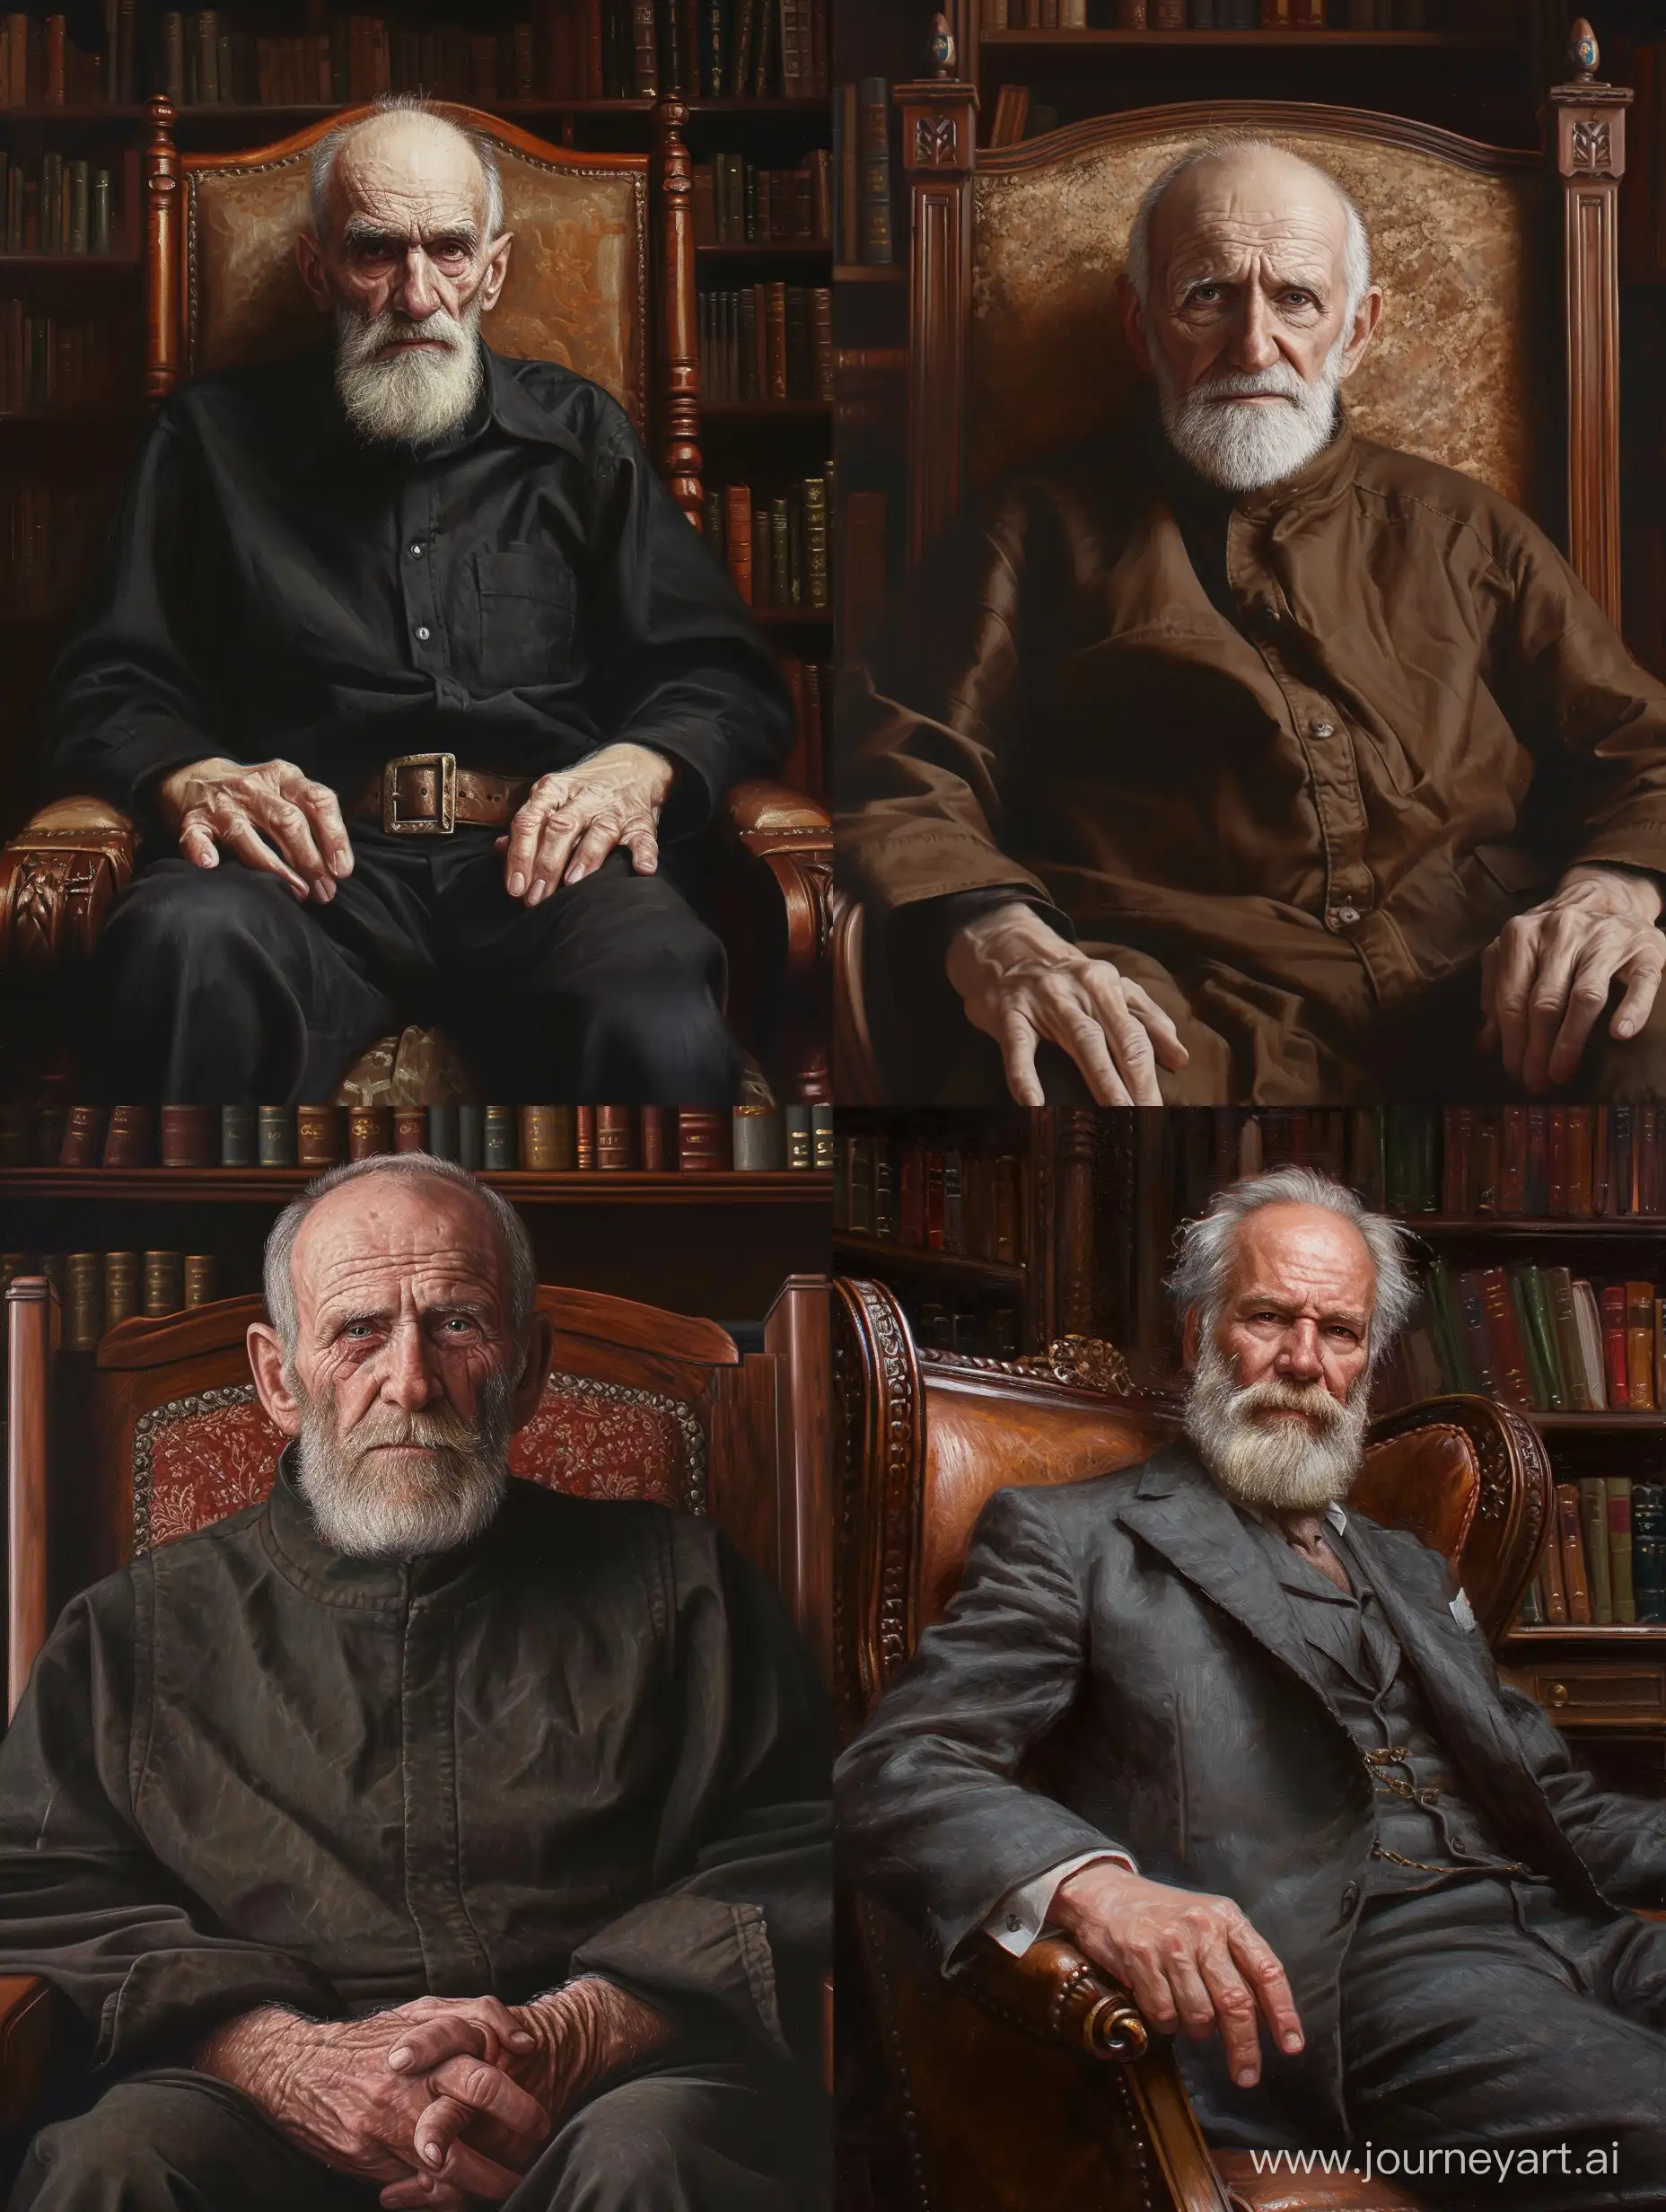 Старик, мудрец, сидит на кресле, вид спереди, борода, четкий взгляд, 100% реалистичеости, четкость изображения до мелкой морщинки, на заднем фоне книги